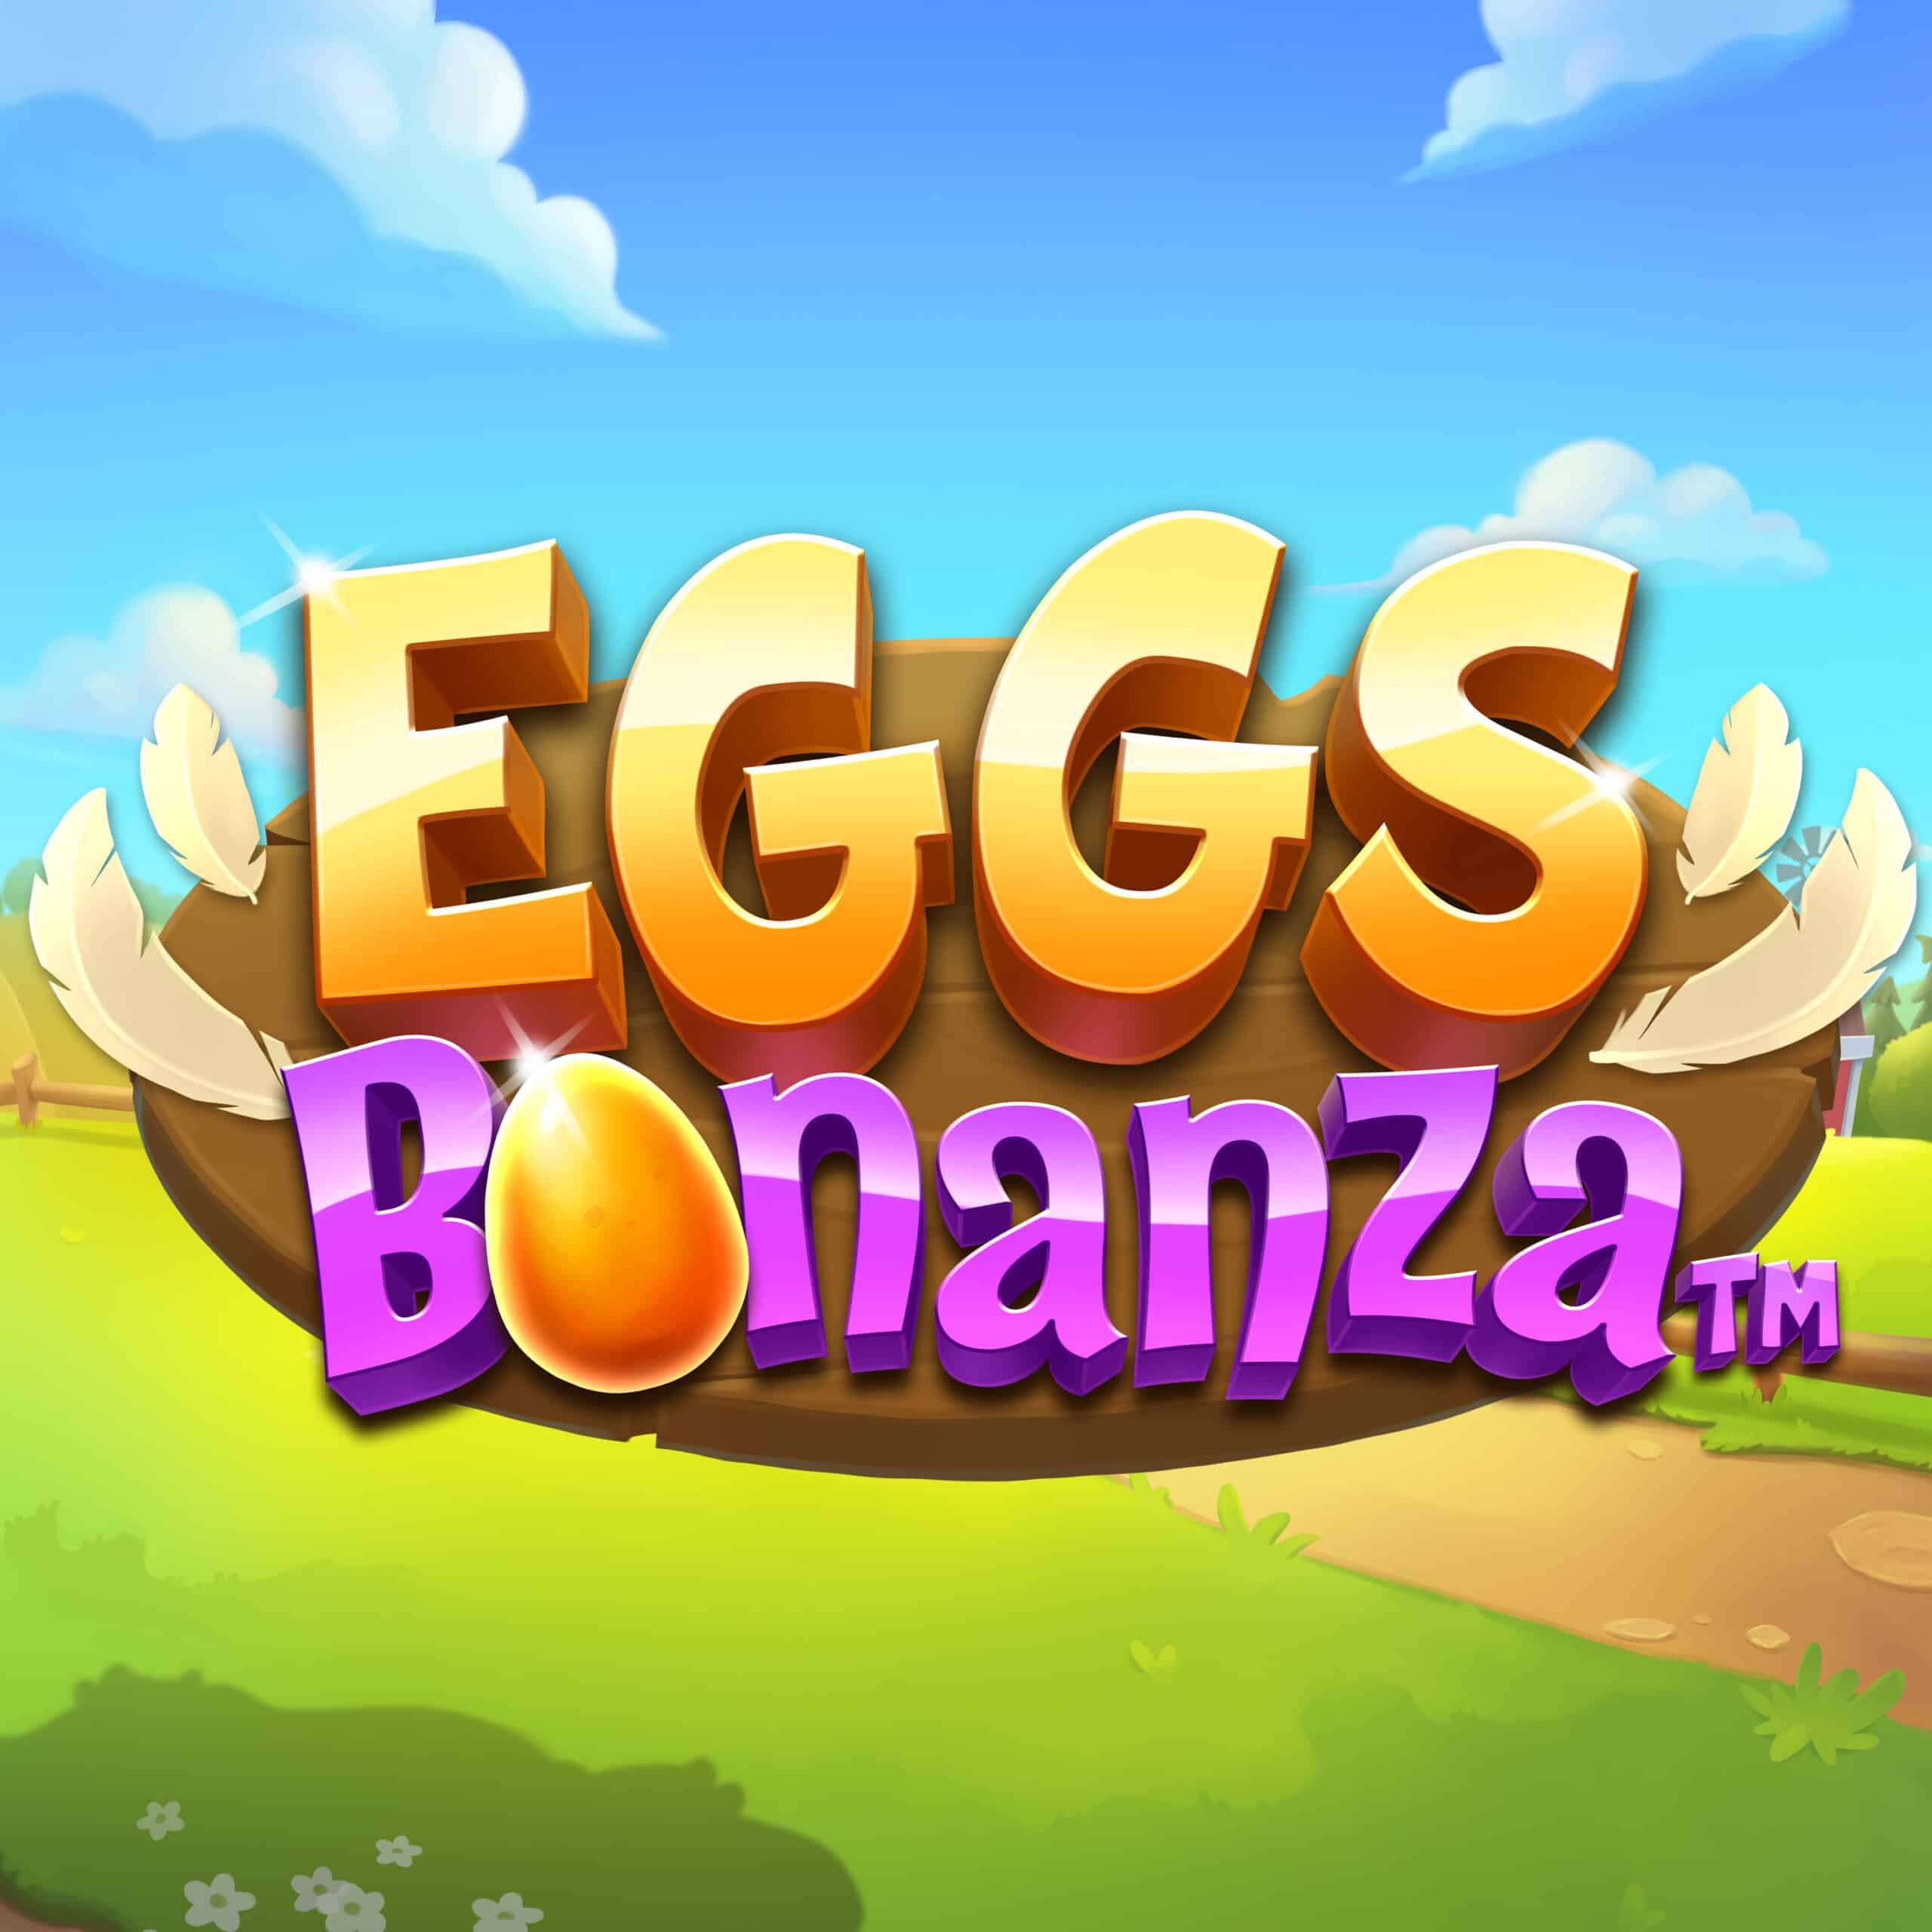 Bonanza Slot Review [2023] – Play Bonanza Slot Game Online